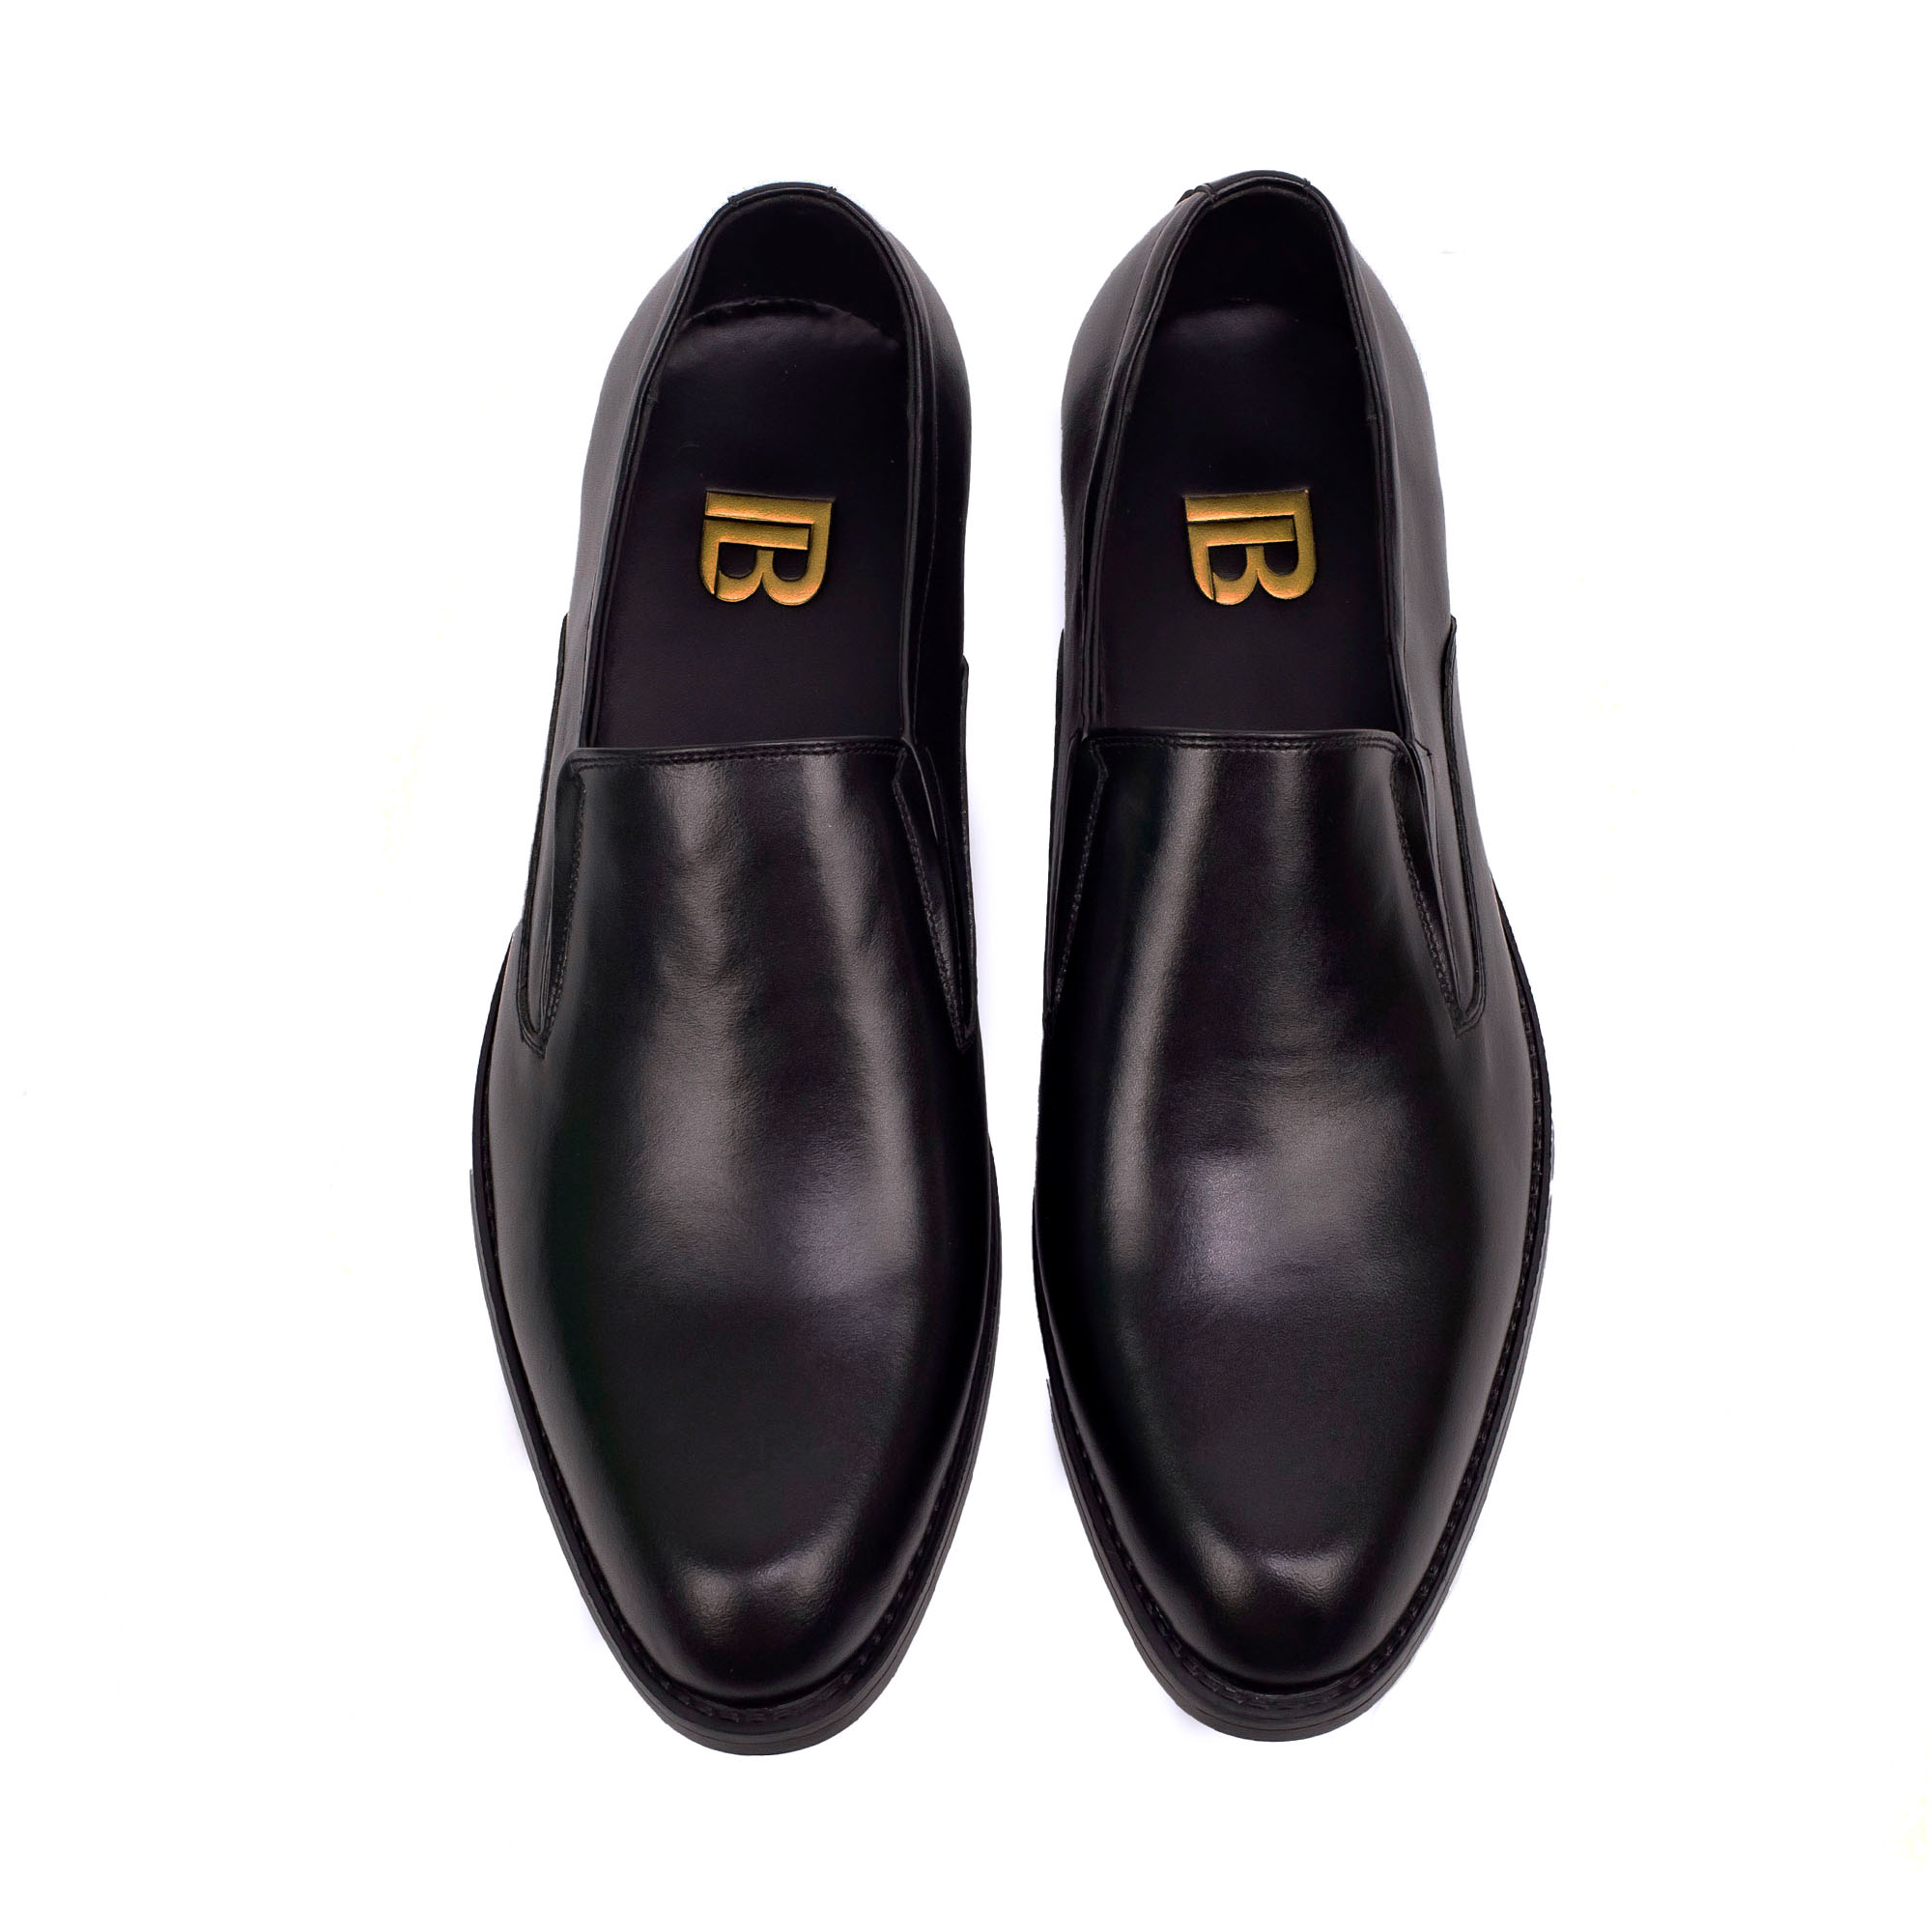 Giày tây nam công sở da bò nappa cao cấp, giày lười nam màu đen G107- Bụi leather- hộp sang...